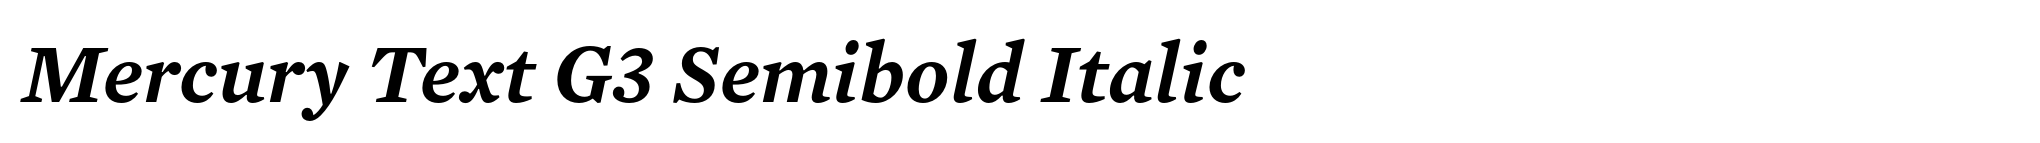 Mercury Text G3 Semibold Italic image